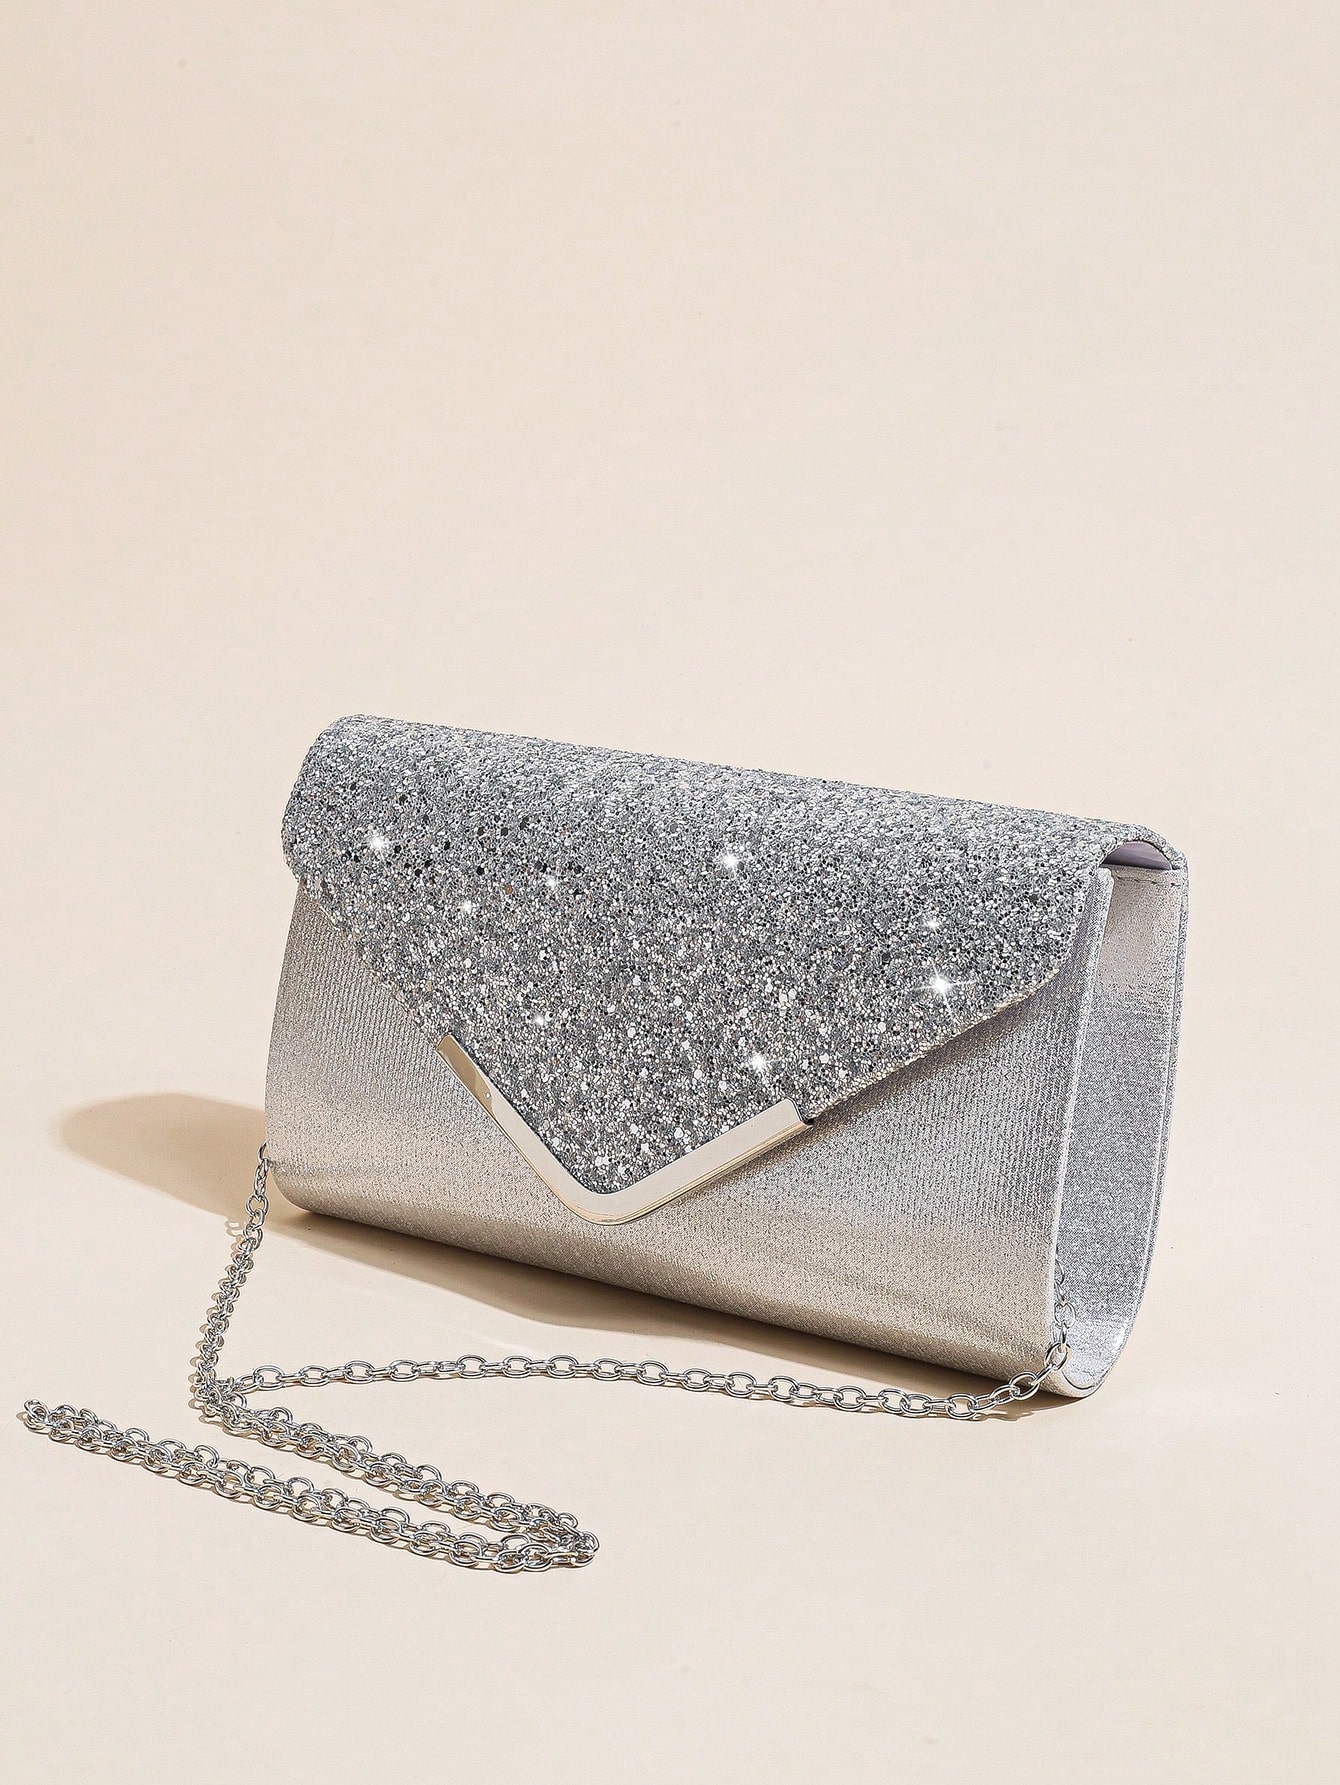 Женская вечерняя сумка-конверт, серебро блестящая блестящая сумка стразы в форме облака роскошная вечерняя сумка клатч для ужина вечеринки кошелек женская сумка через плечо су